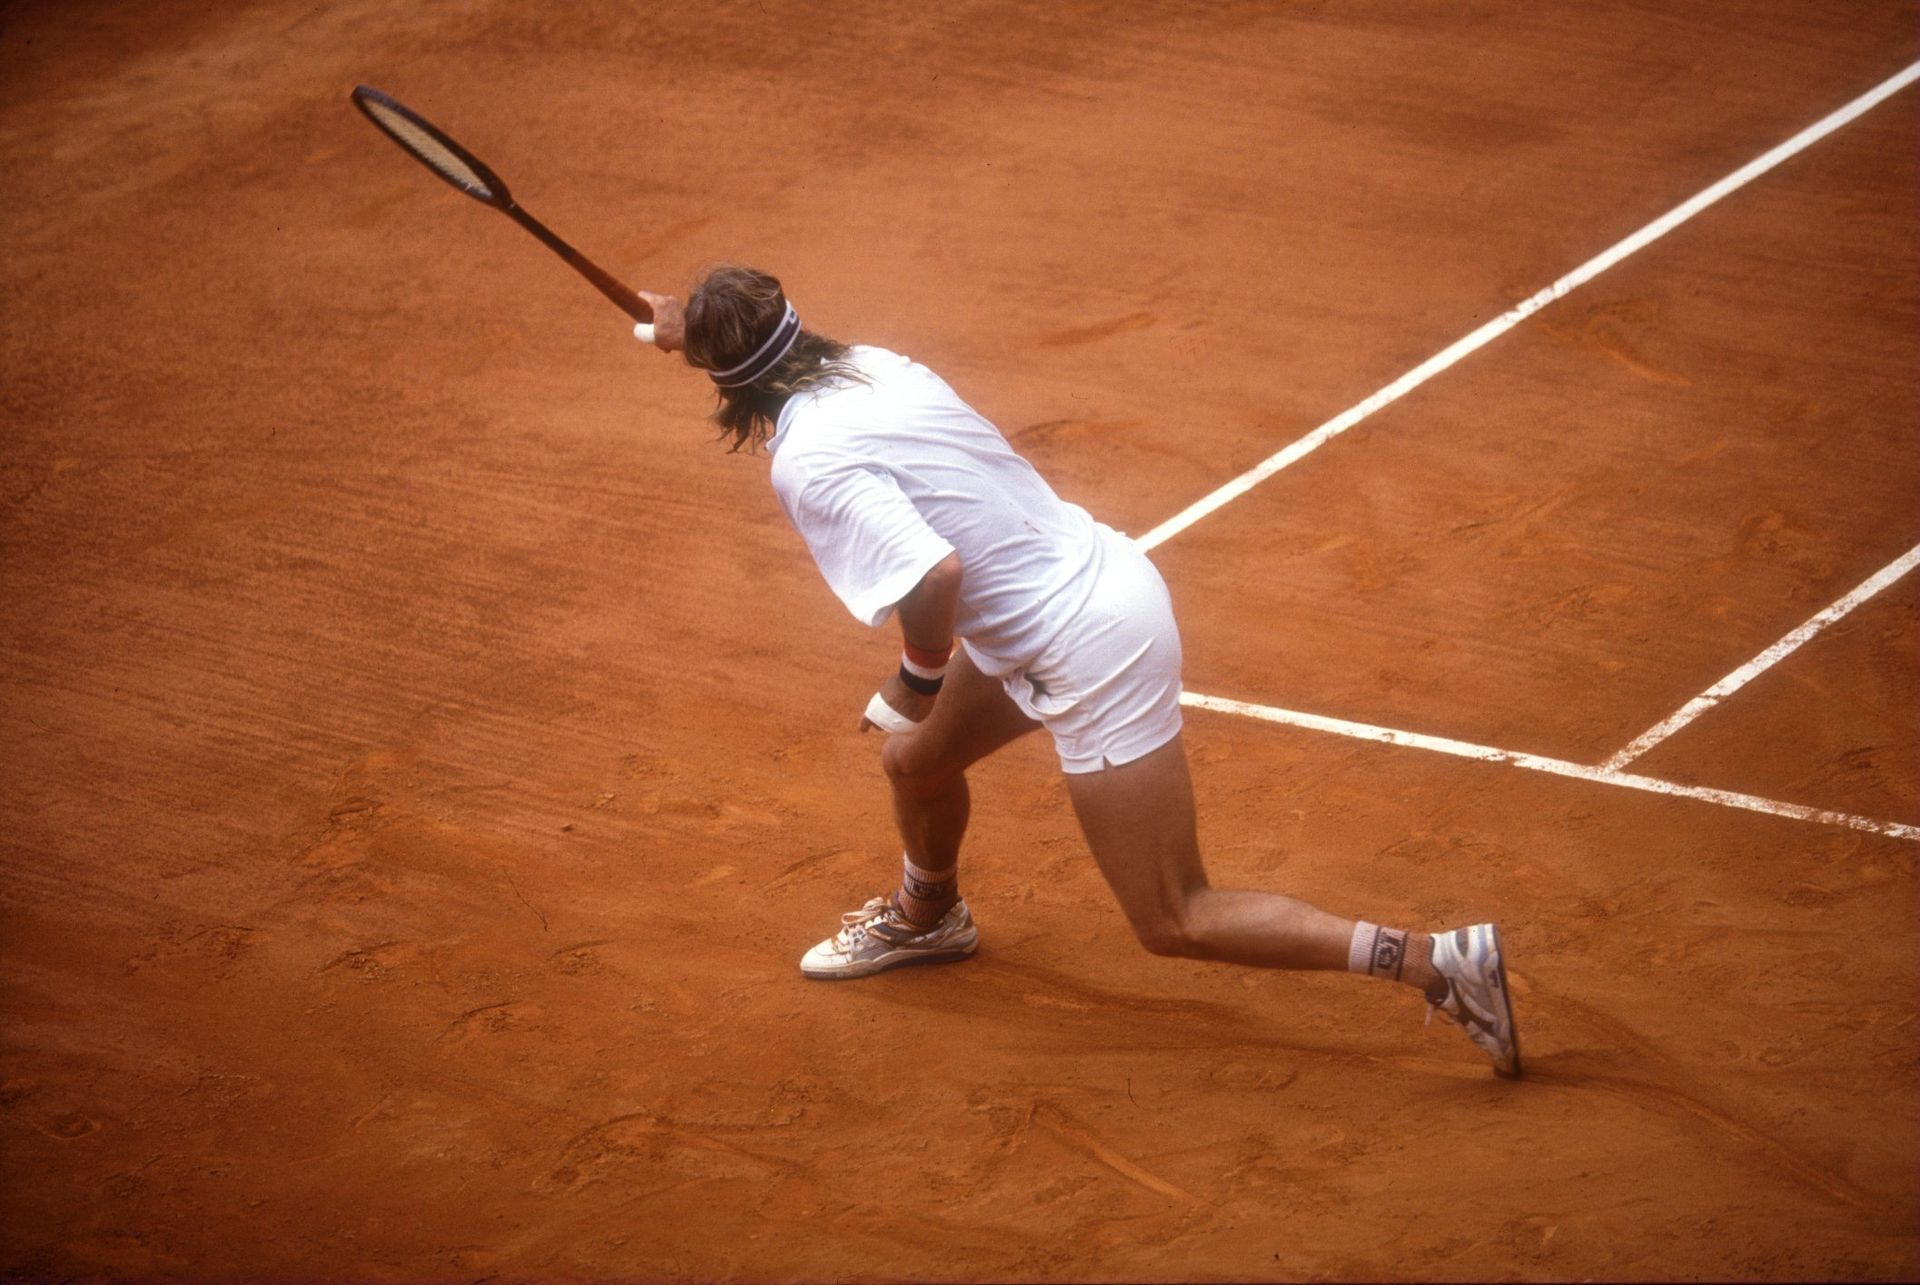 1991 г., - завръщането: Борг губи от Аресе в първия кръг в Монте Карло, трибуните са пълни, а представители на медиите идват от целия свят